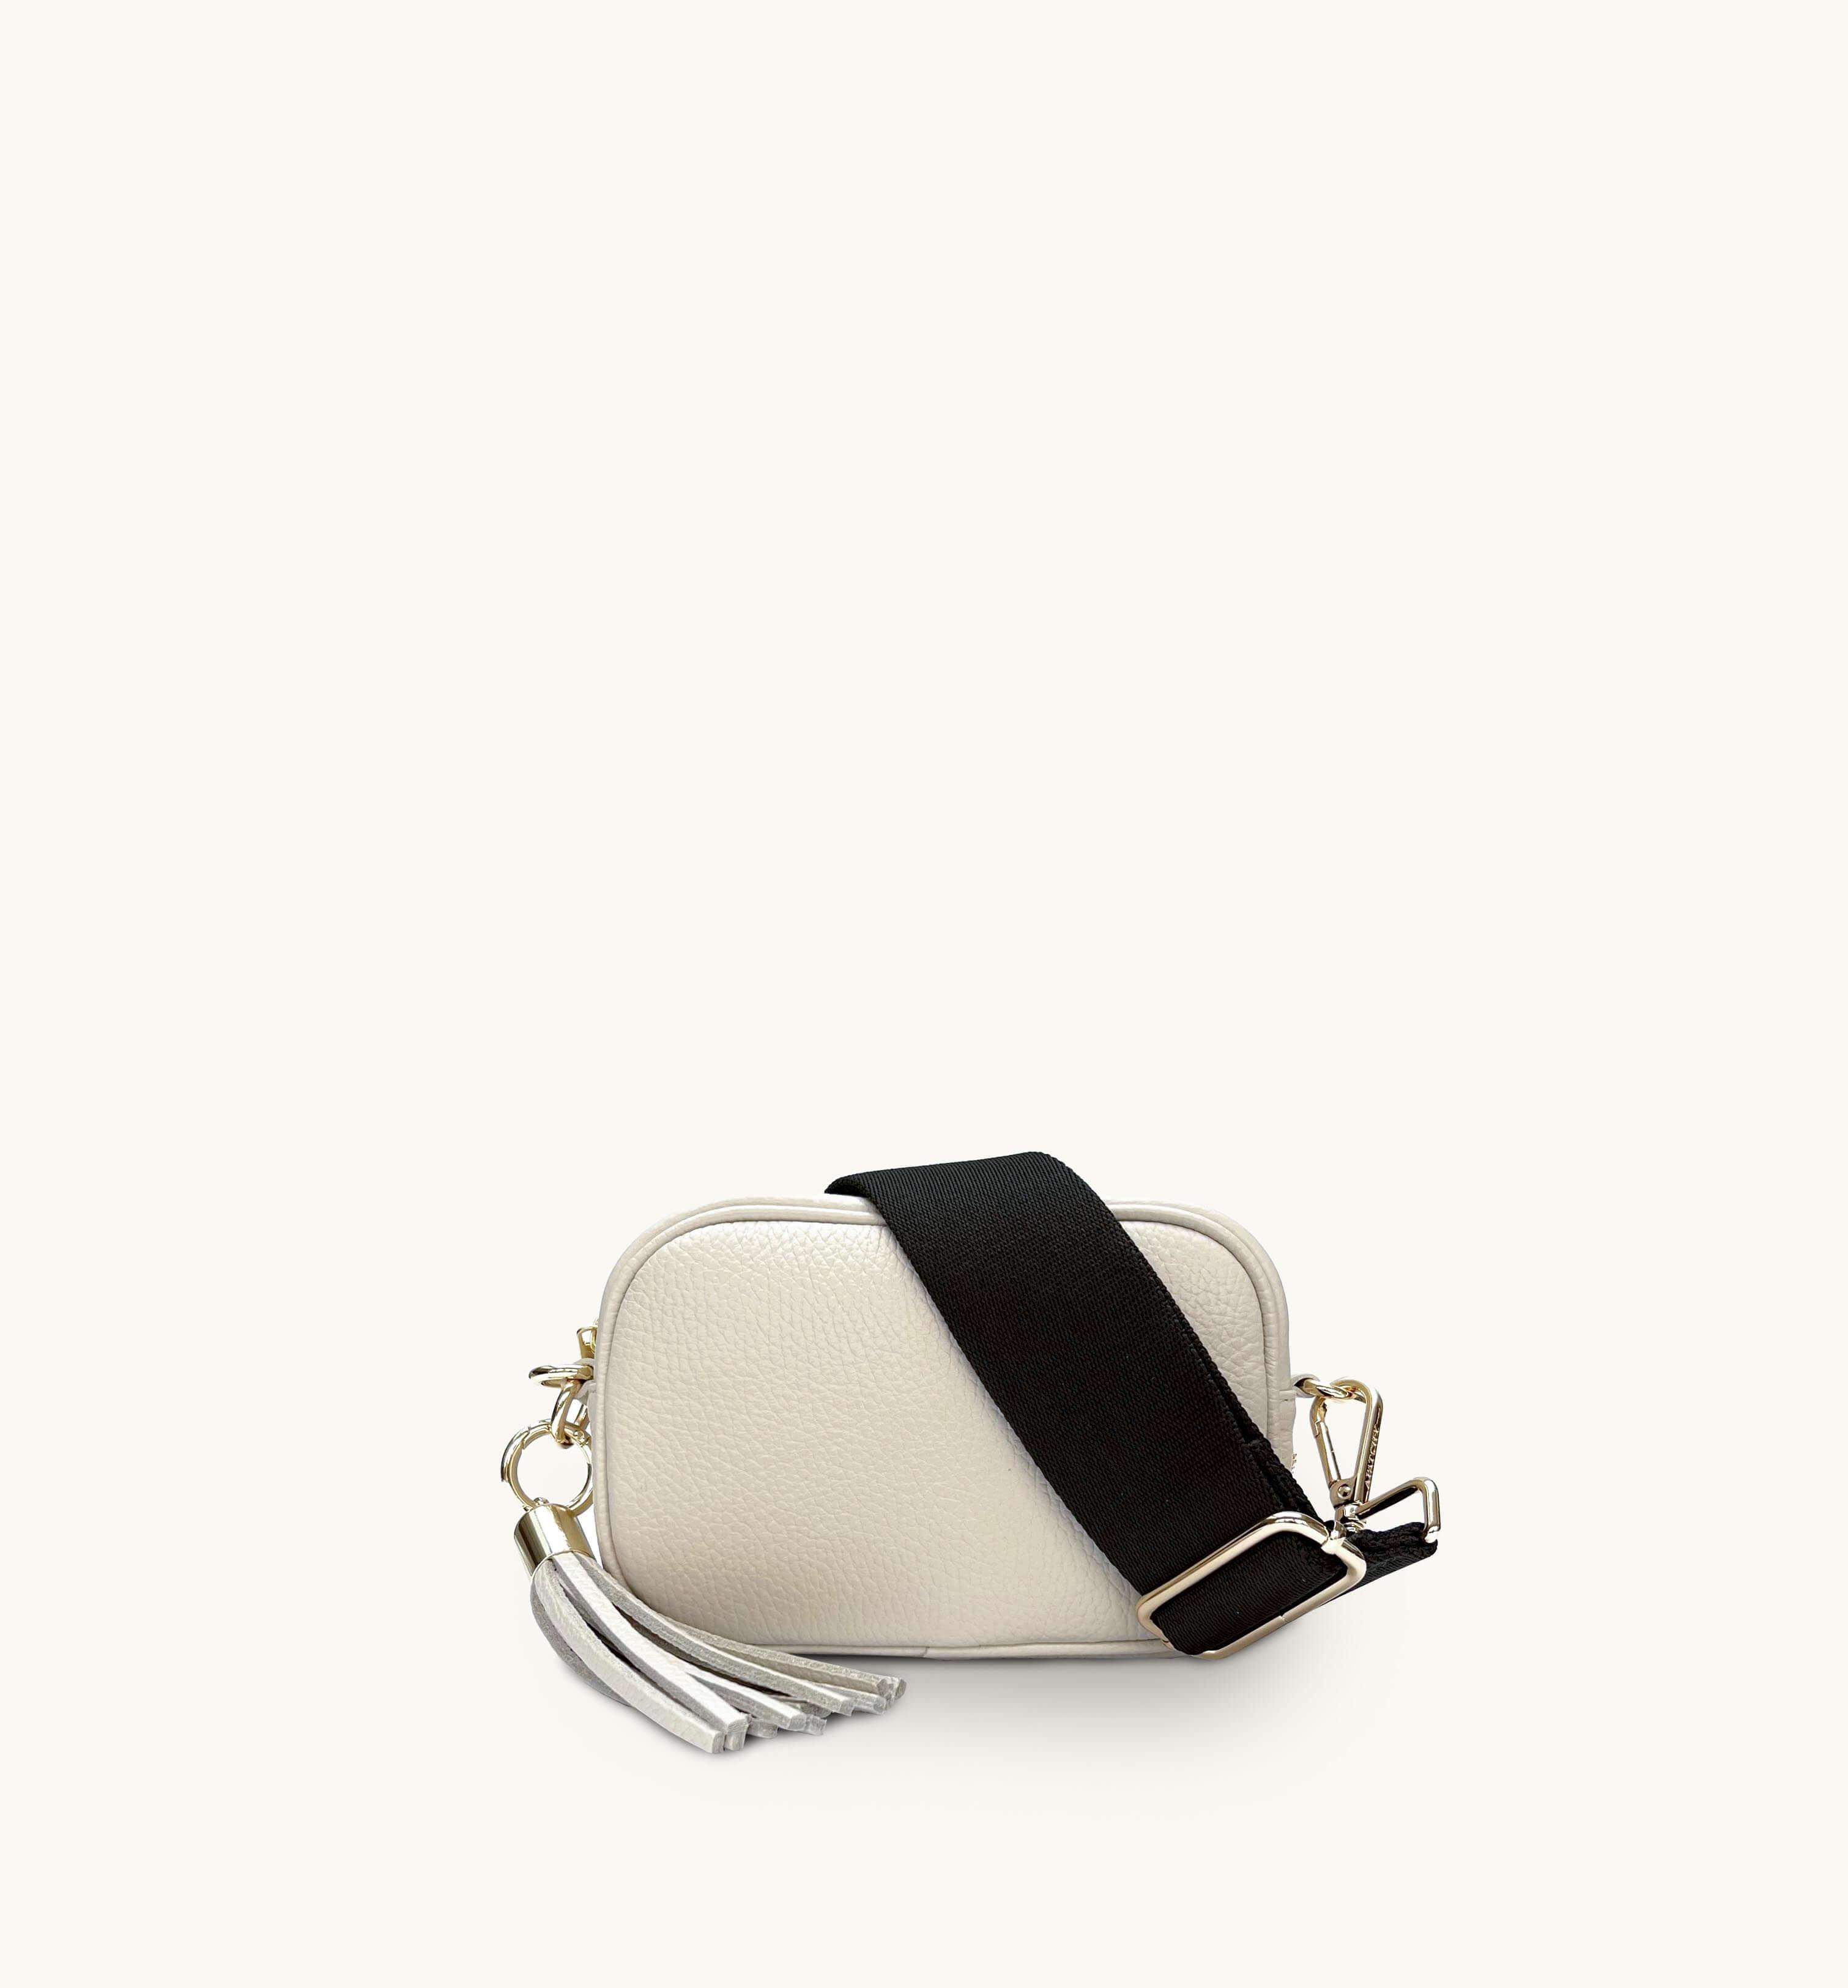 Миниатюрная кожаная сумка для телефона с кисточками и простым ремешком цвета хаки Apatchy London, бежевый